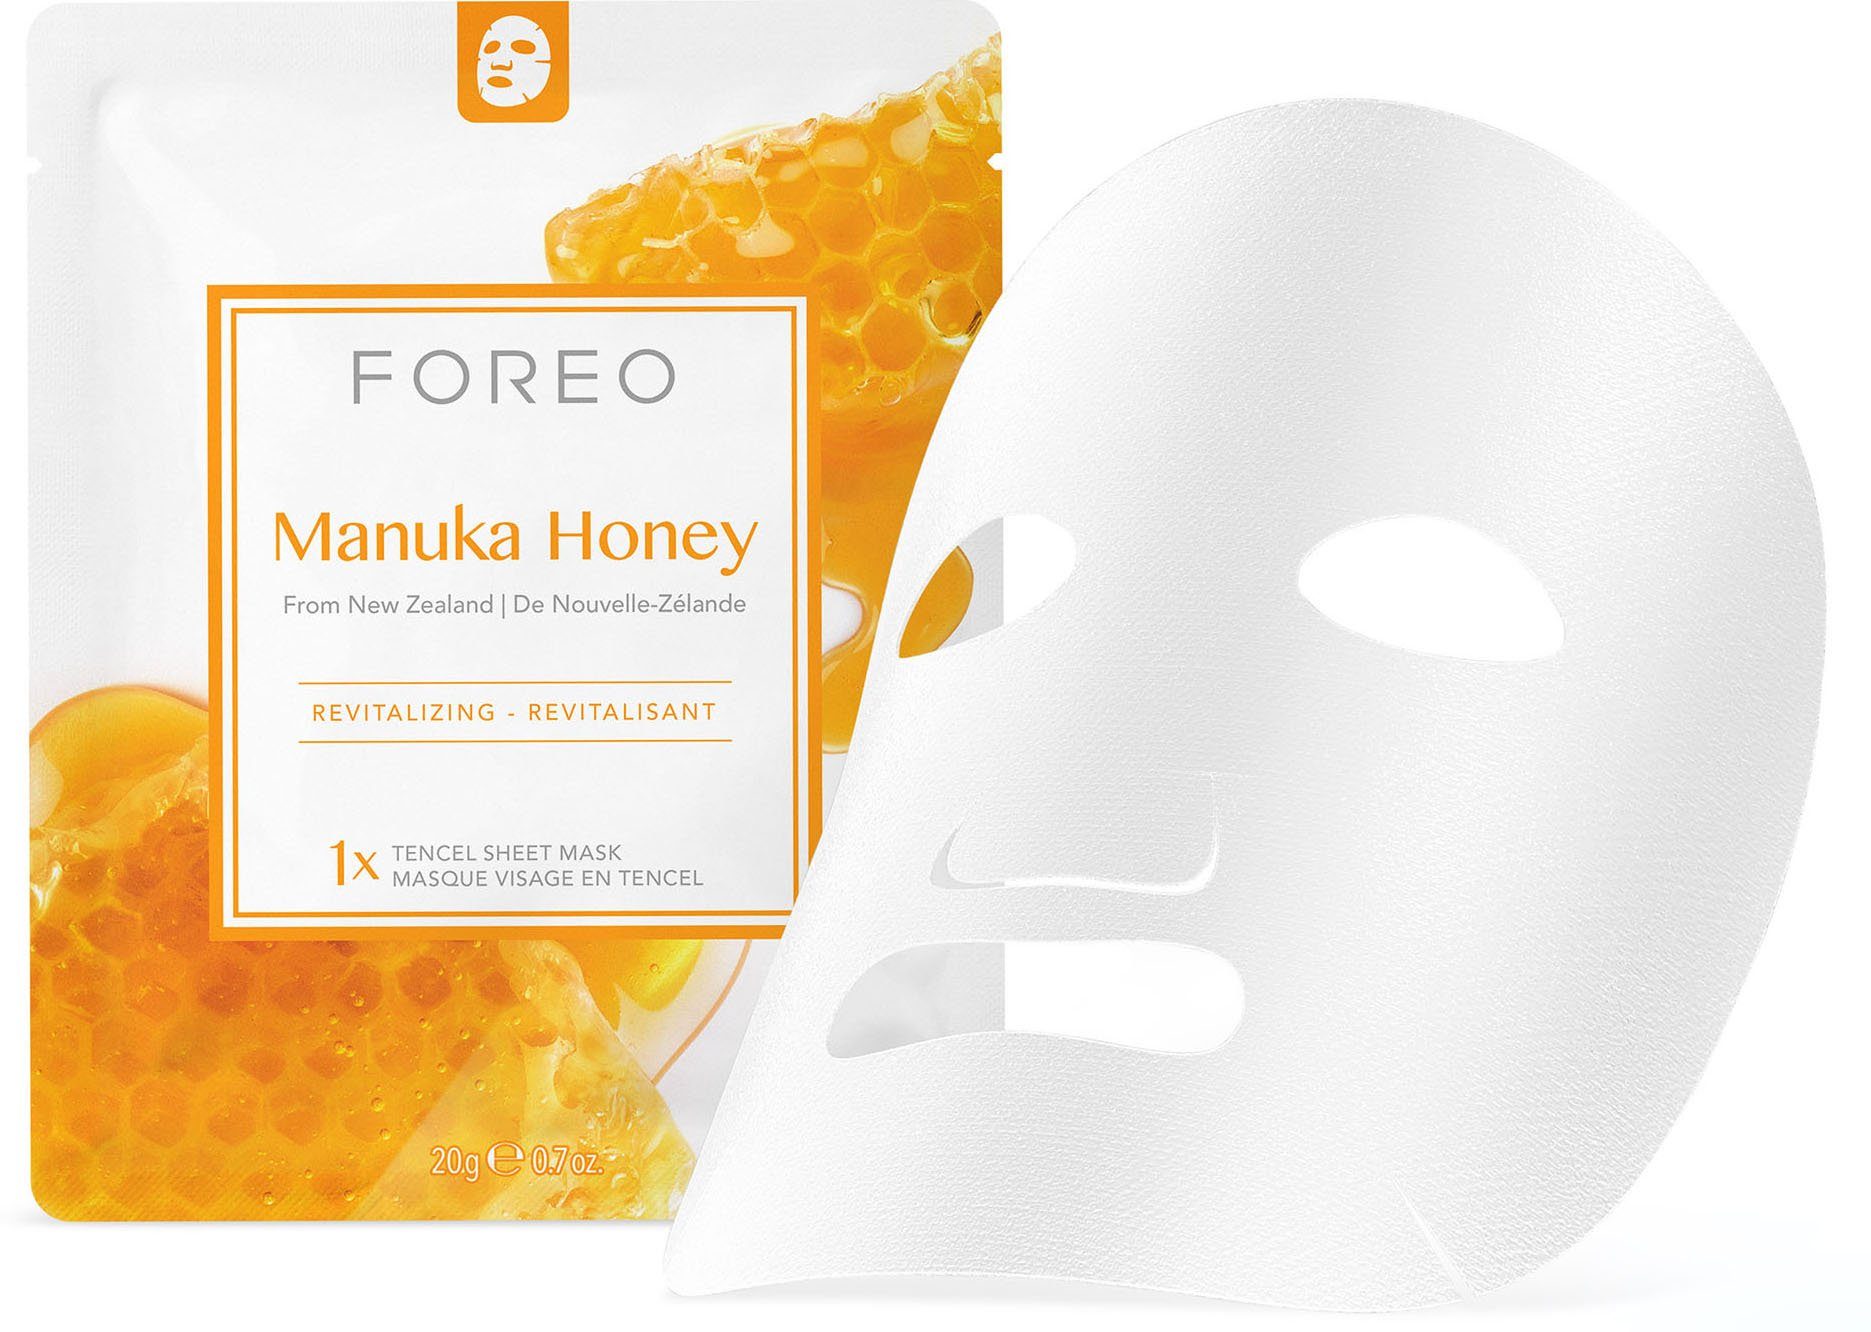 3-tlg. Masks Manuka To Sheet Collection FOREO Face Farm Honey, Gesichtsmaske